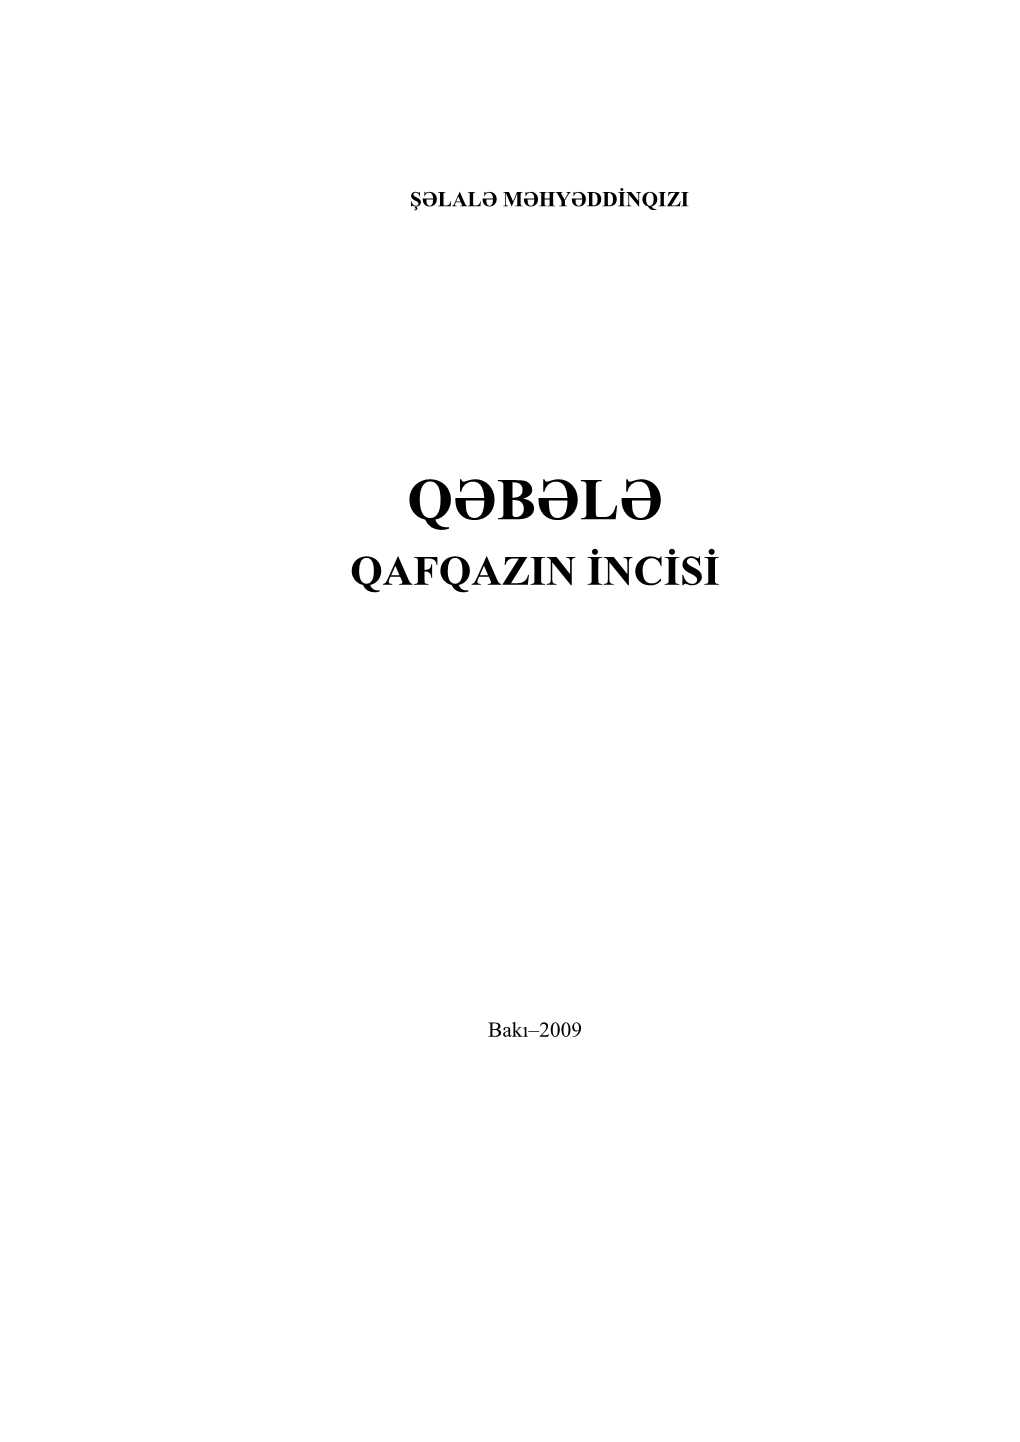 Qəbələ Qafqazin Incisi